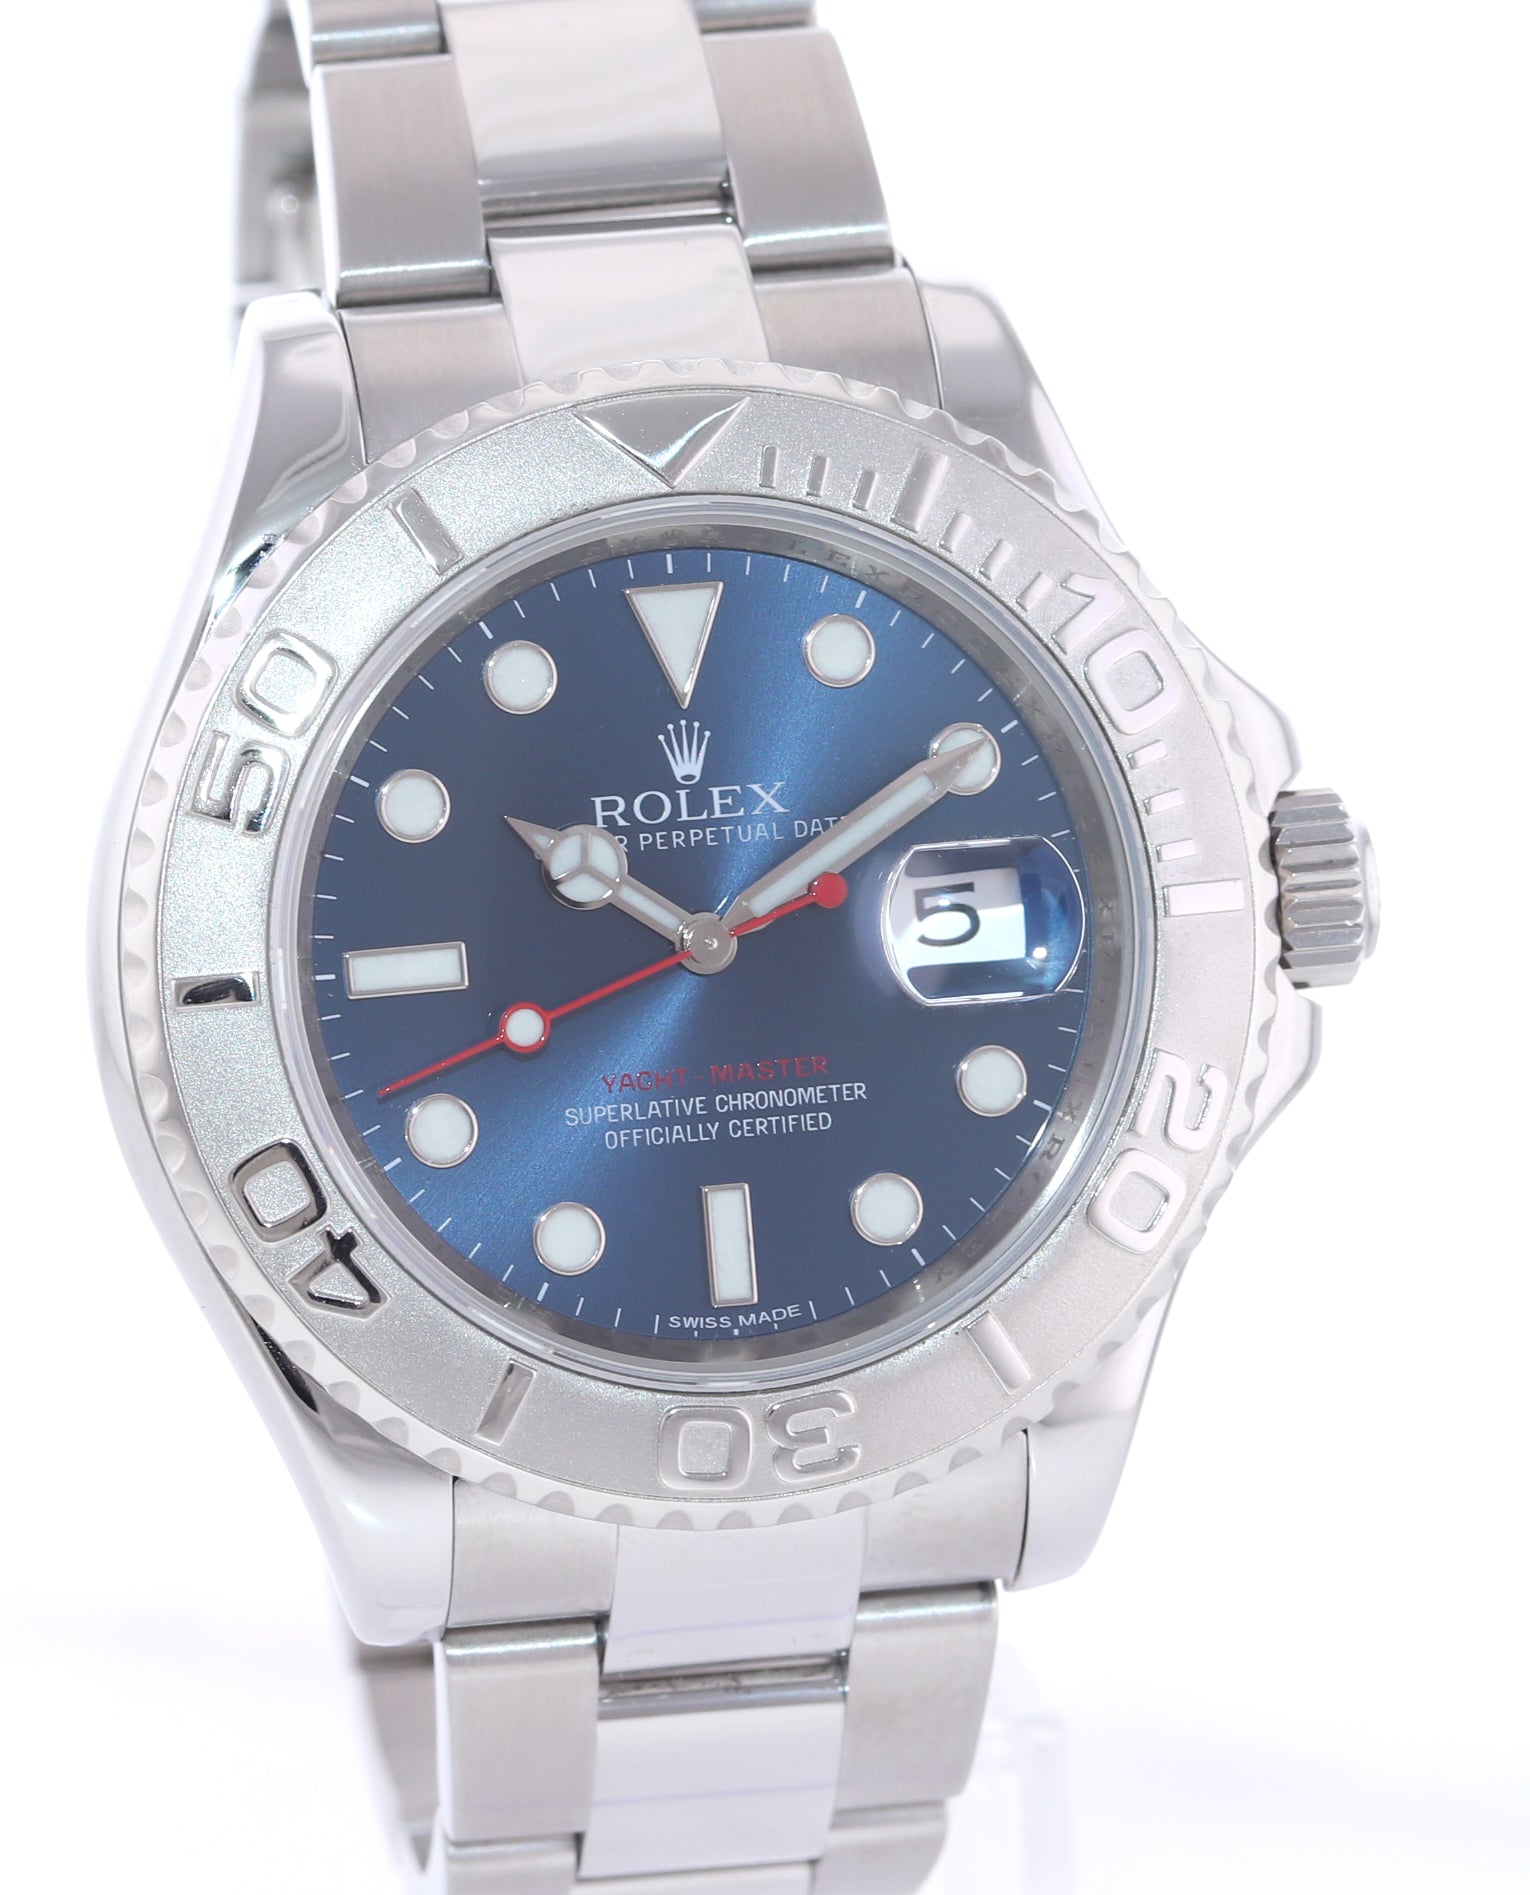 2017 Rolex Yacht-Master 116622 Blue Dial Steel Platinum 40mm Watch Box